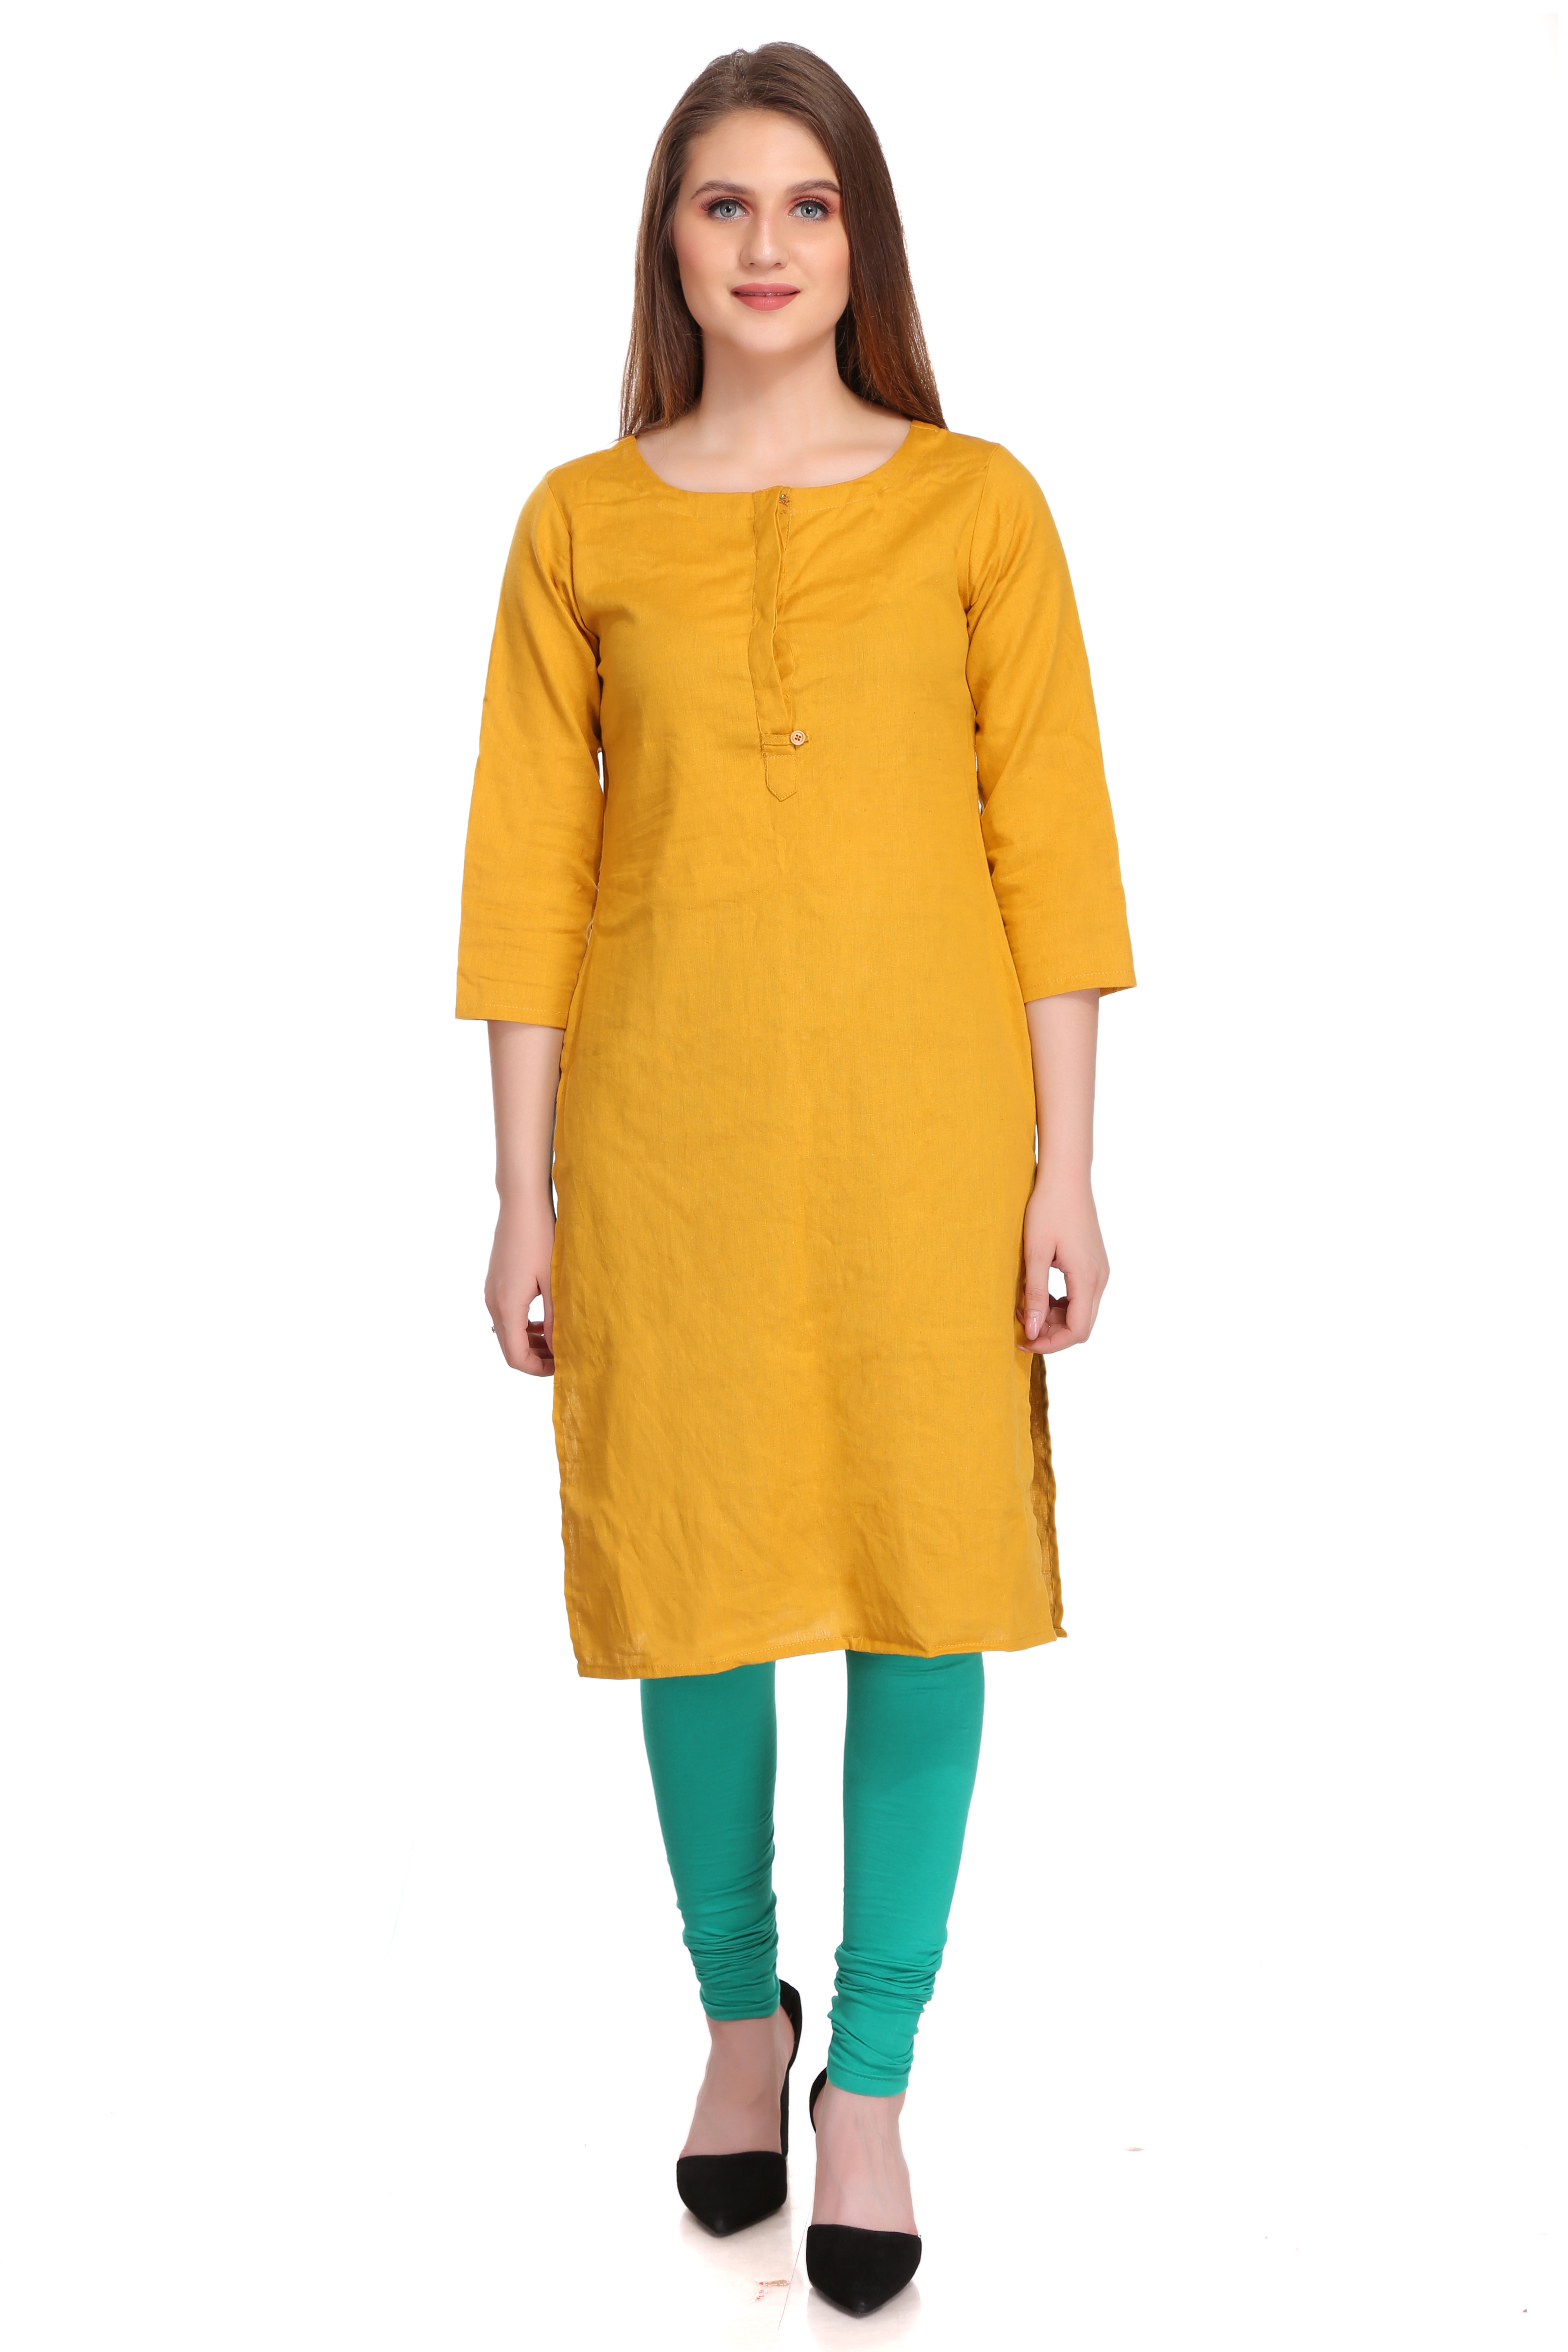 Colorfit | Colorfit Cotton Lycra Churidar Length Leggings for Women